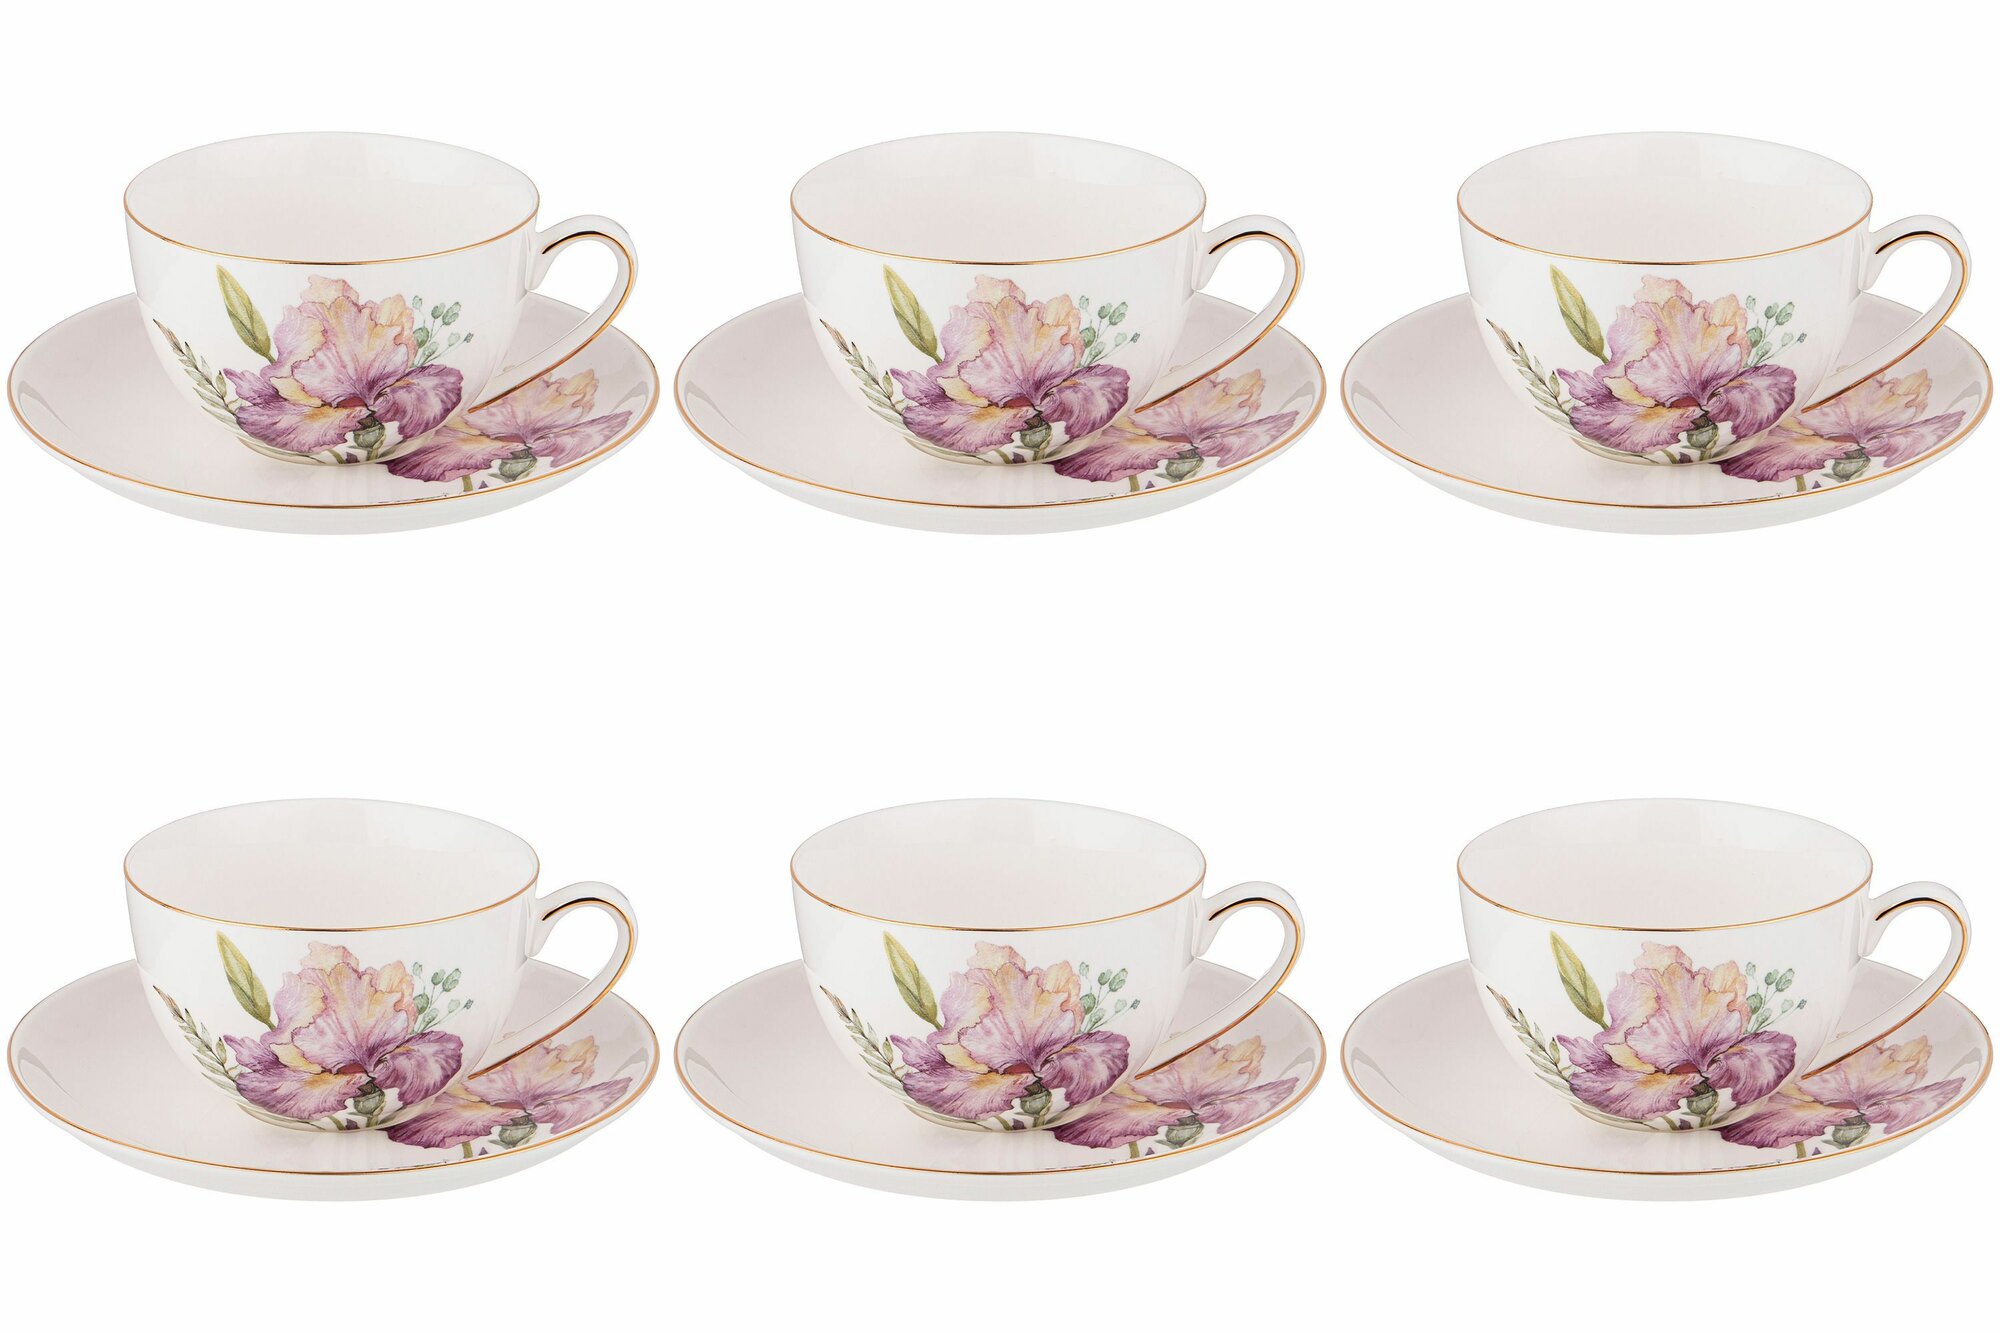 Чайный набор посуды на 6 персон 280 мл Lefard Irises 12 Предметов, 6 чашек и Блюдец, подарочный фарфор / кружки для чая и кофе